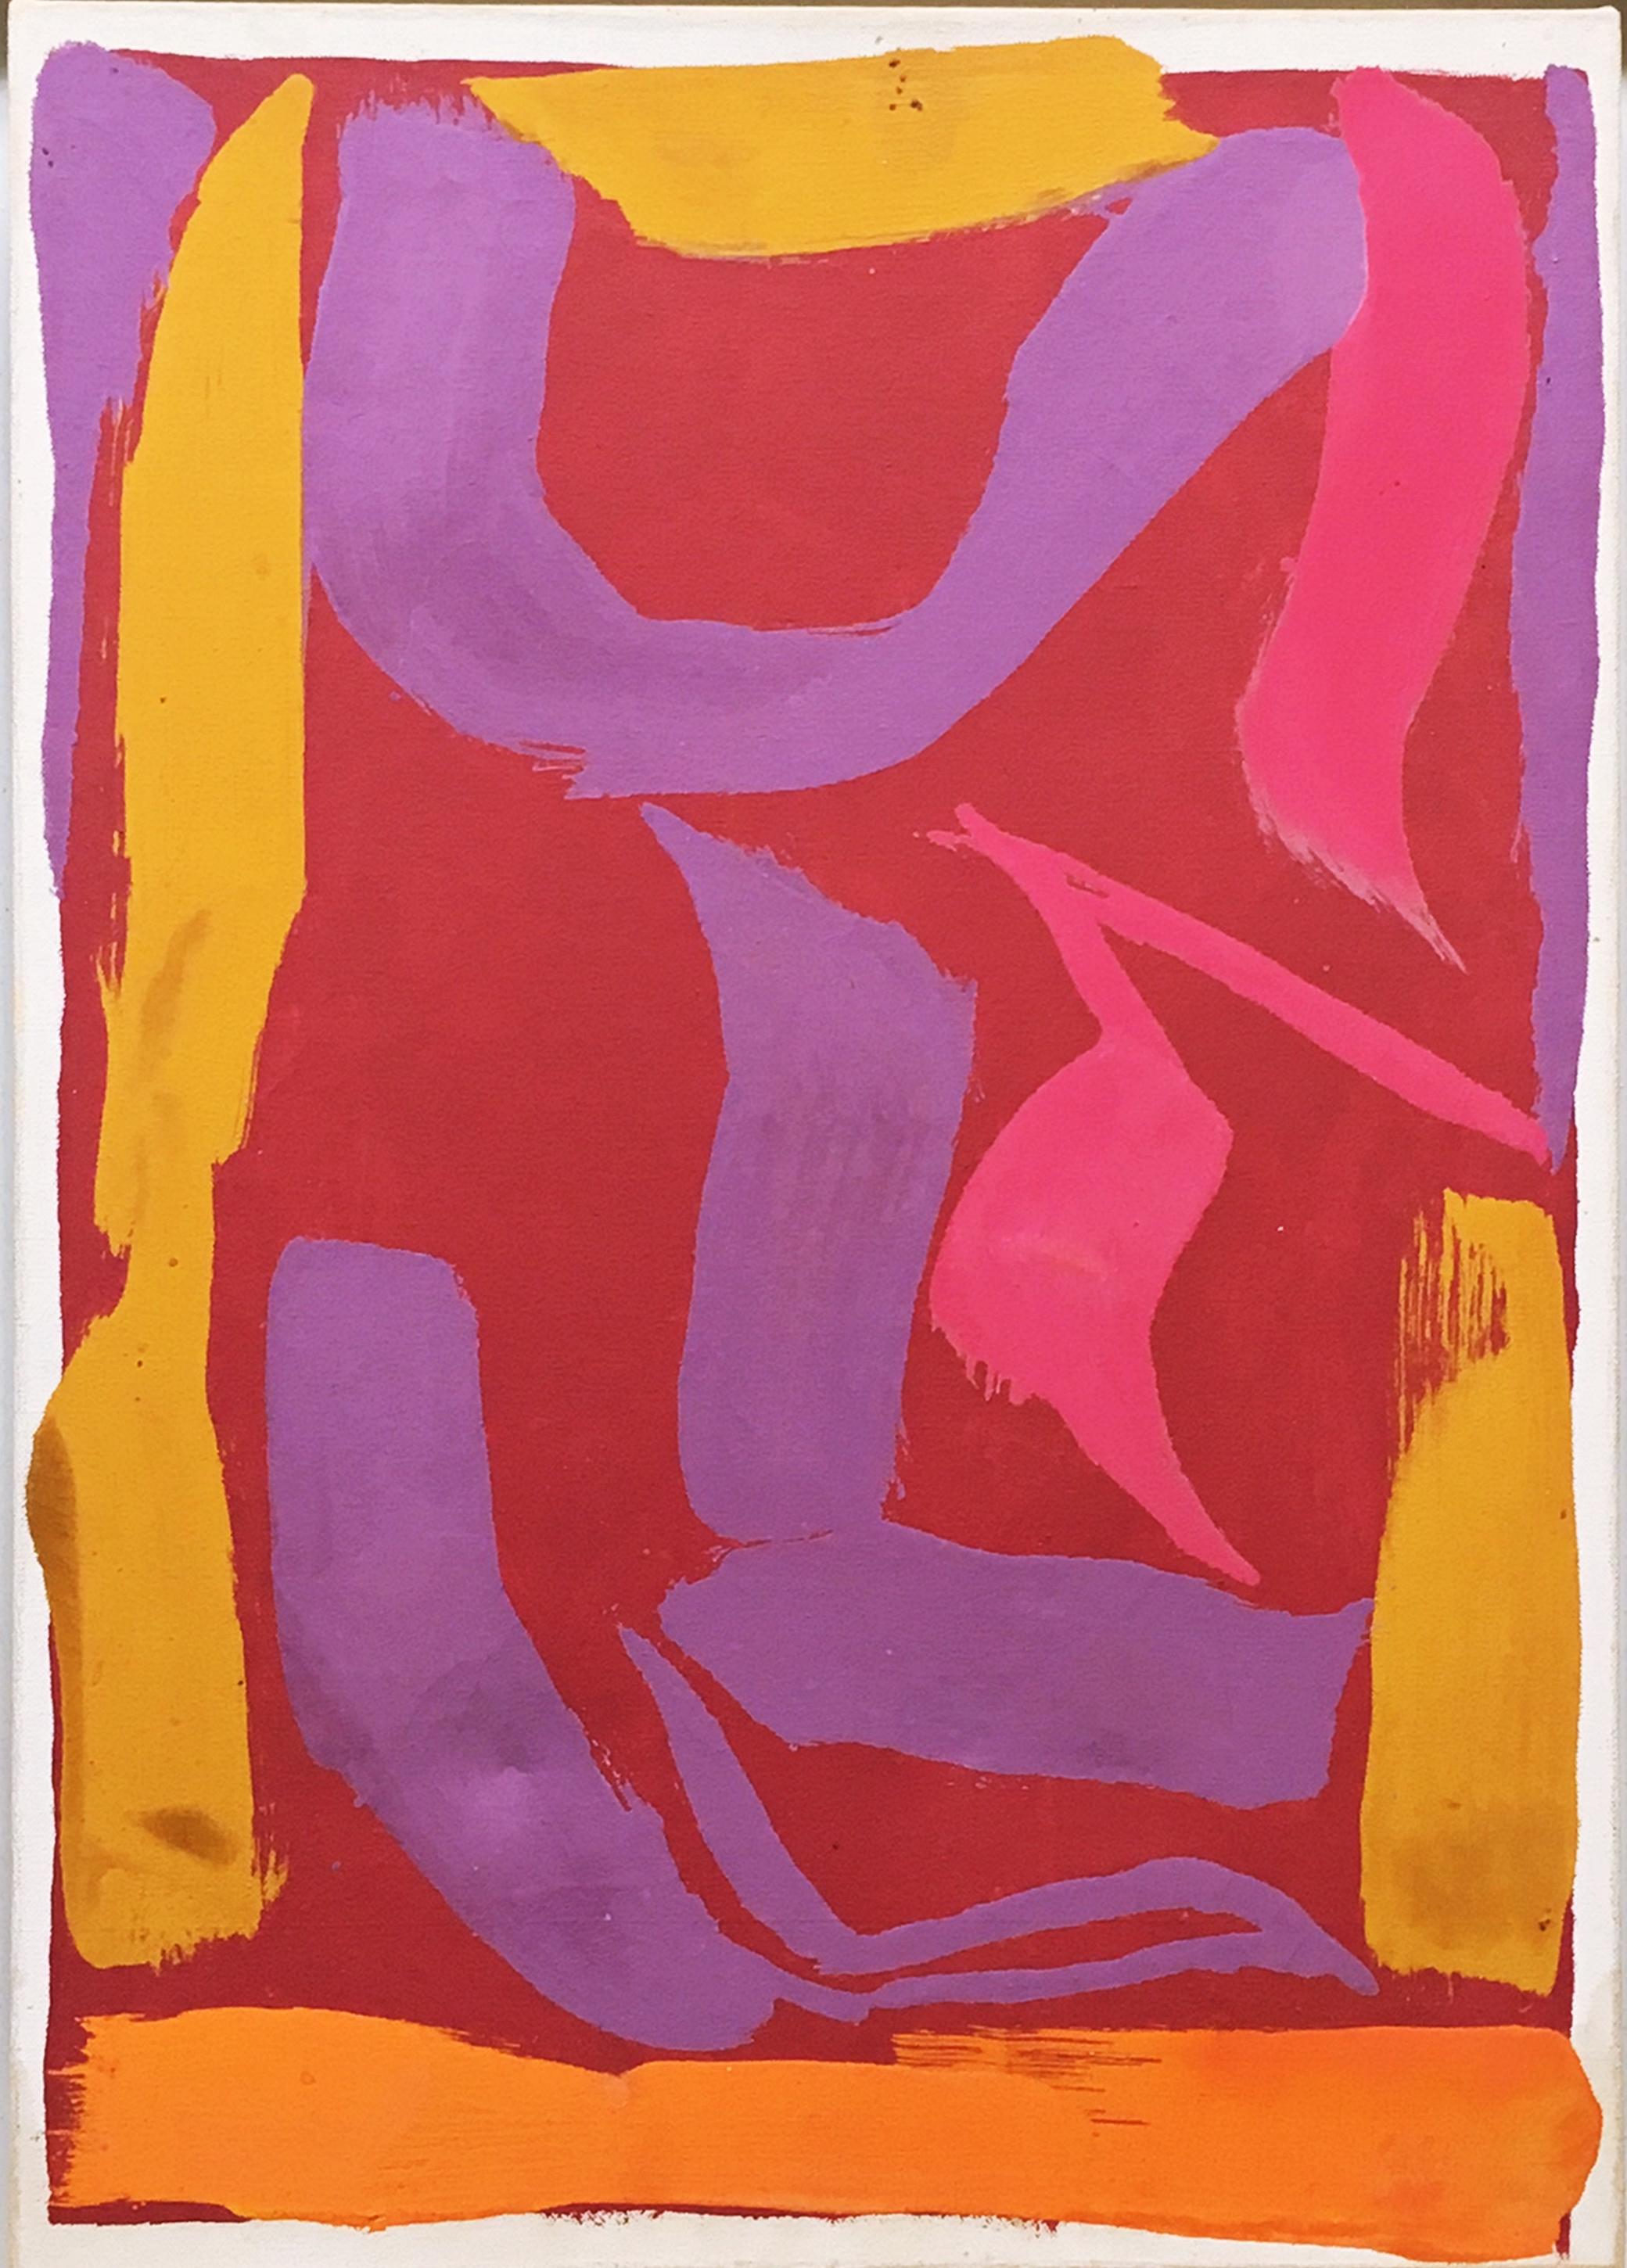 Raymond Parker
Abstraktes expressionistisches Gemälde ohne Titel, 1974
Acryl auf Leinwand (mit Original Fischbach Galerie Label auf der Rückseite des Rahmens)
Auf der Rückseite vom Künstler handsigniert und datiert
Inklusive Rahmen
Wunderschönes